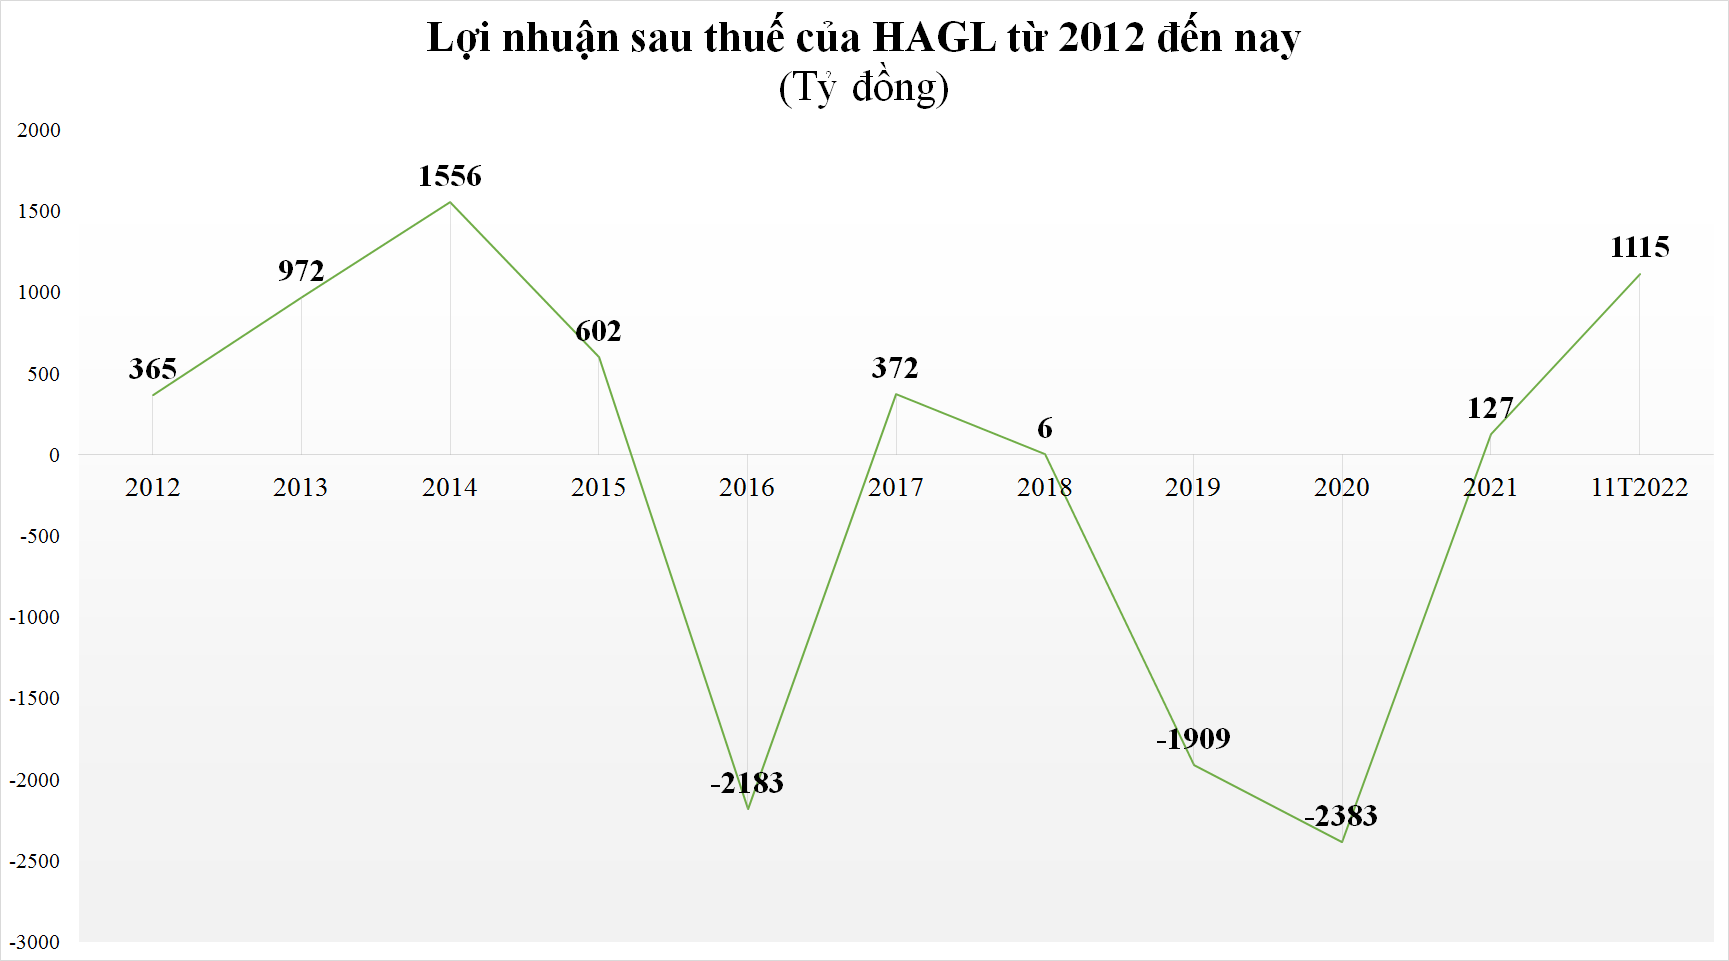 HAGL lãi hơn 1.100 tỷ đồng, sắp cán đích lợi nhuận năm sau 11 tháng